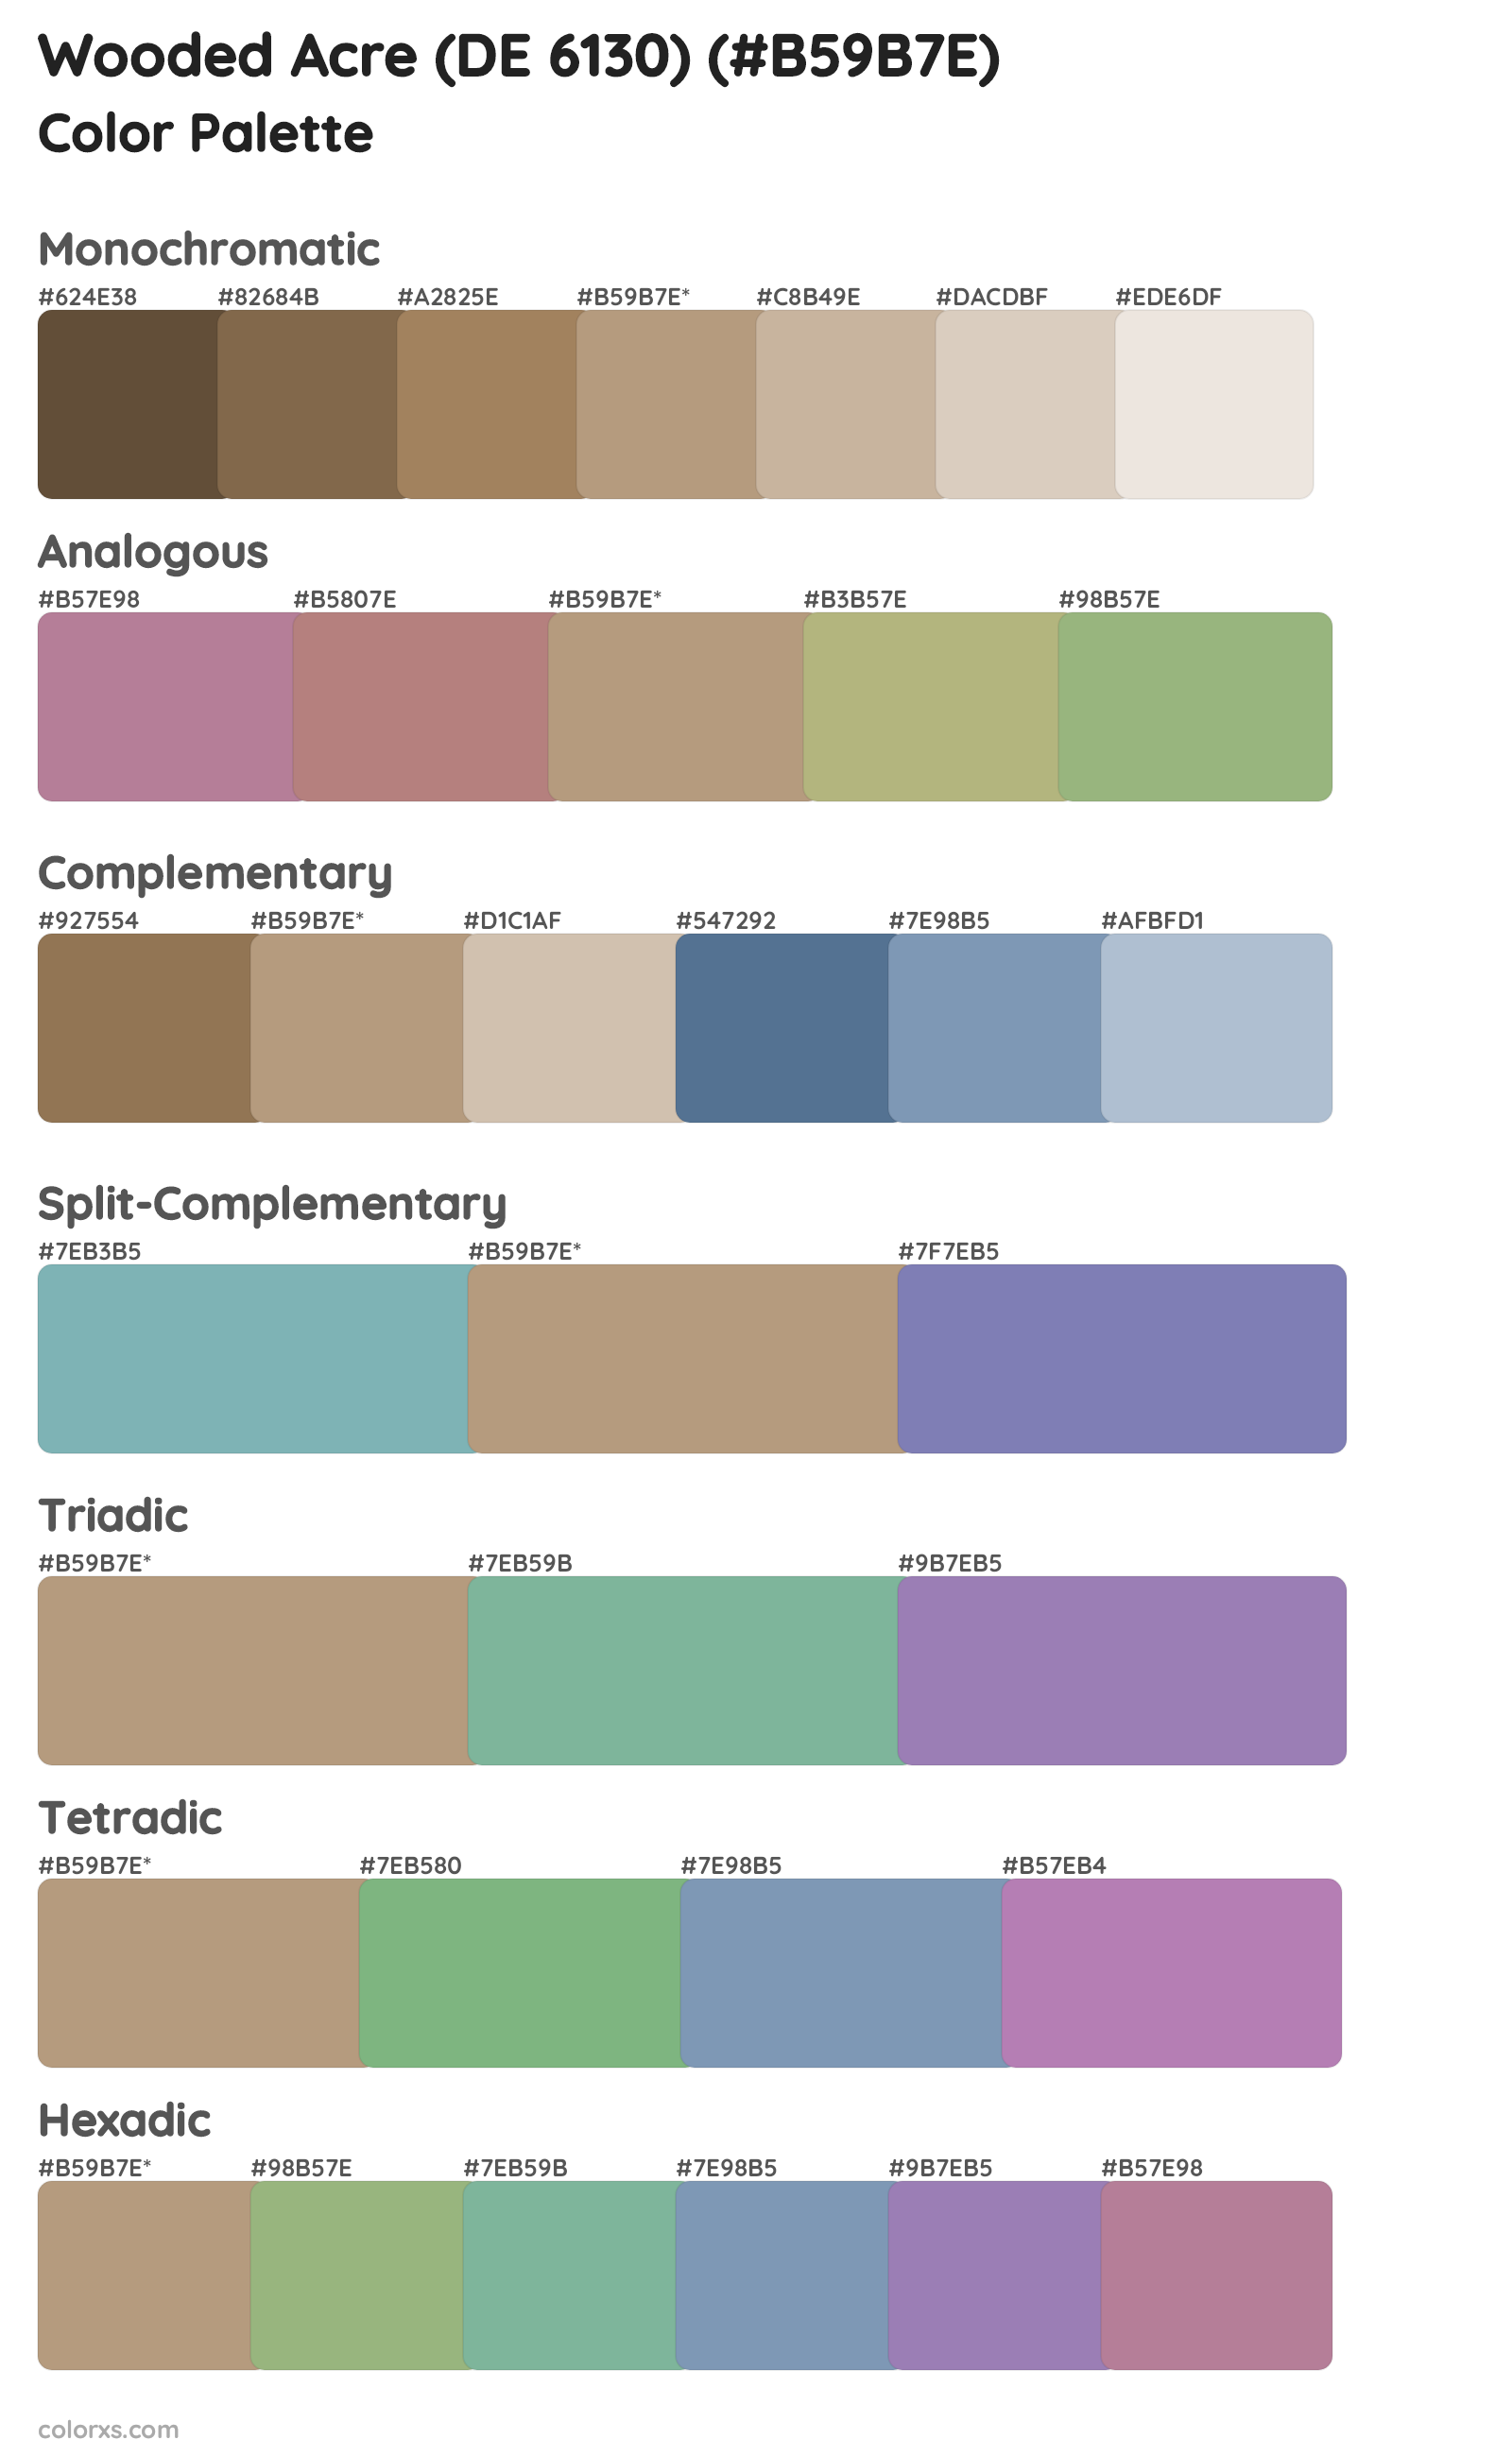 Wooded Acre (DE 6130) Color Scheme Palettes